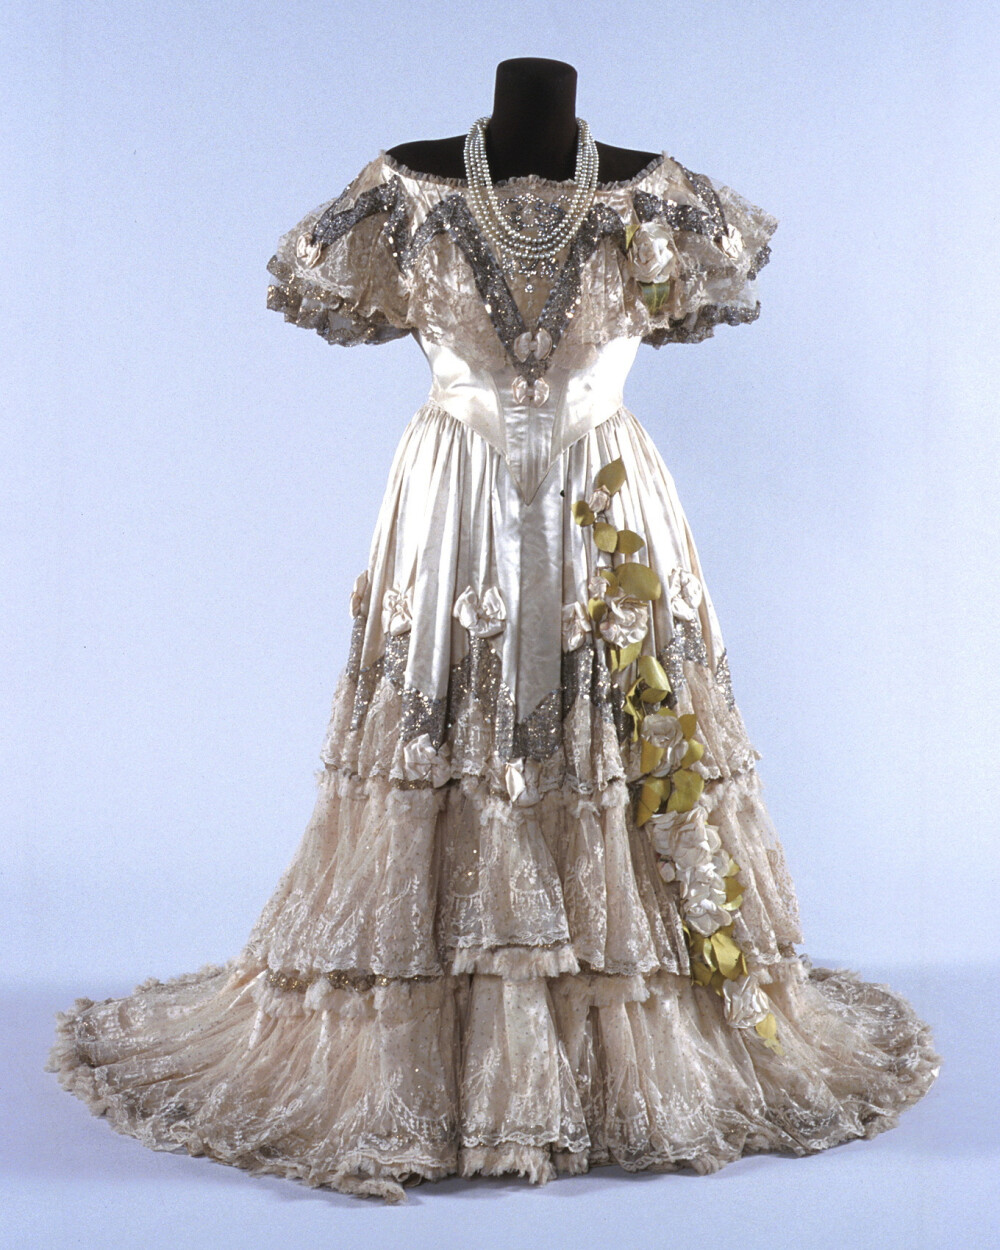 澳大利亚歌剧演唱家Nellie Melba在1900年主演《茶花女》时穿的戏服，由当时著名的时装师Jacques Doucet设计。象牙色缎子裙，装饰着层叠的蕾丝花边、大量银色亮片与水钻组成的闪光饰带、缎子蝴蝶结，还有布制白色山茶花，让整个人都包裹在一片柔光中。款式结合了故事所在的1840年代的服装与演出当时的流行风格，这也是过去的舞台服装常用的设计手法。